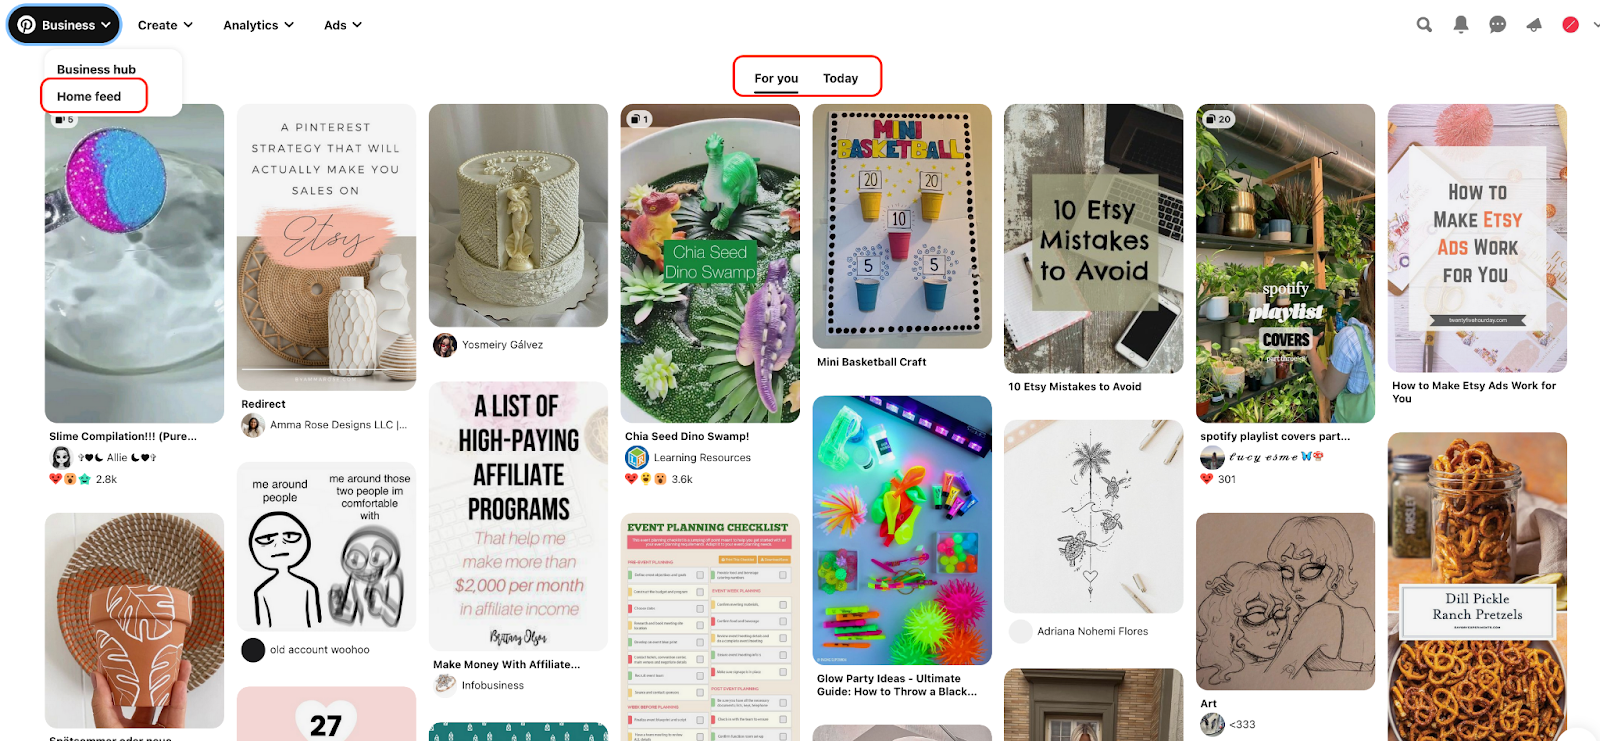 Pinterest home feed on desktop